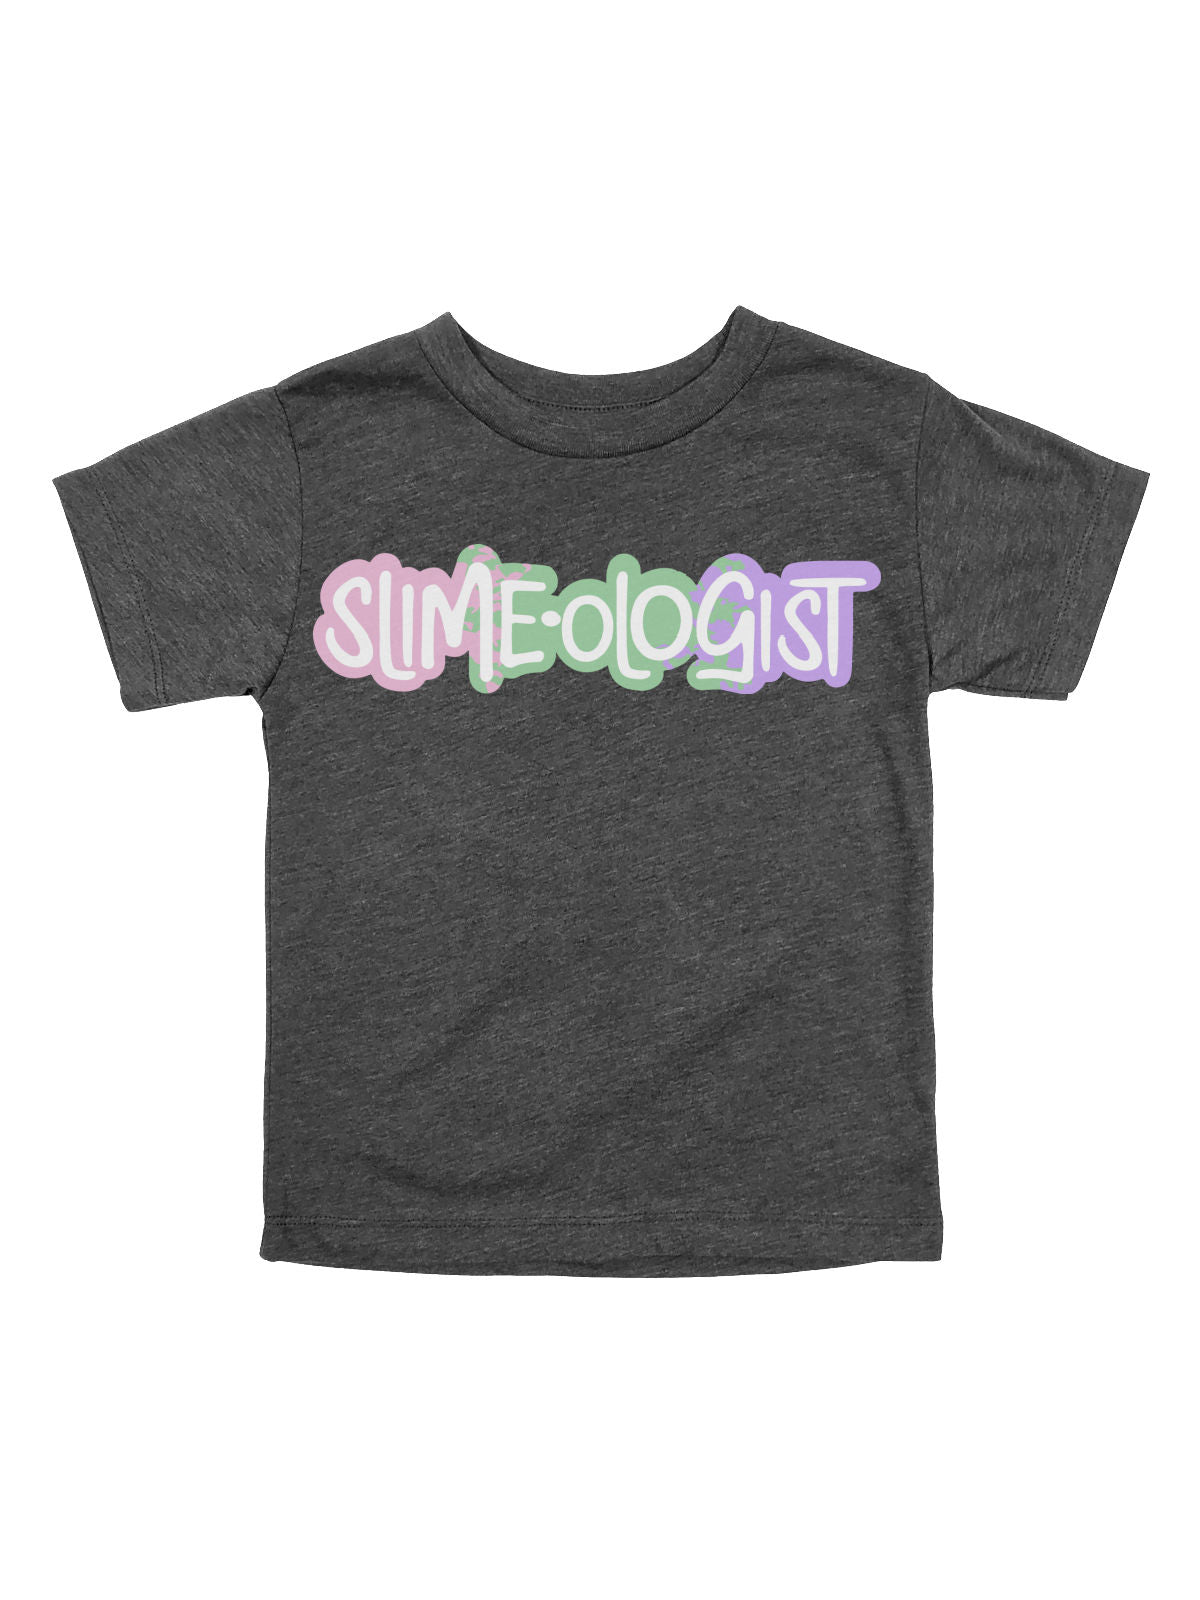 Slimeologist Kids Dark Gray Shirt